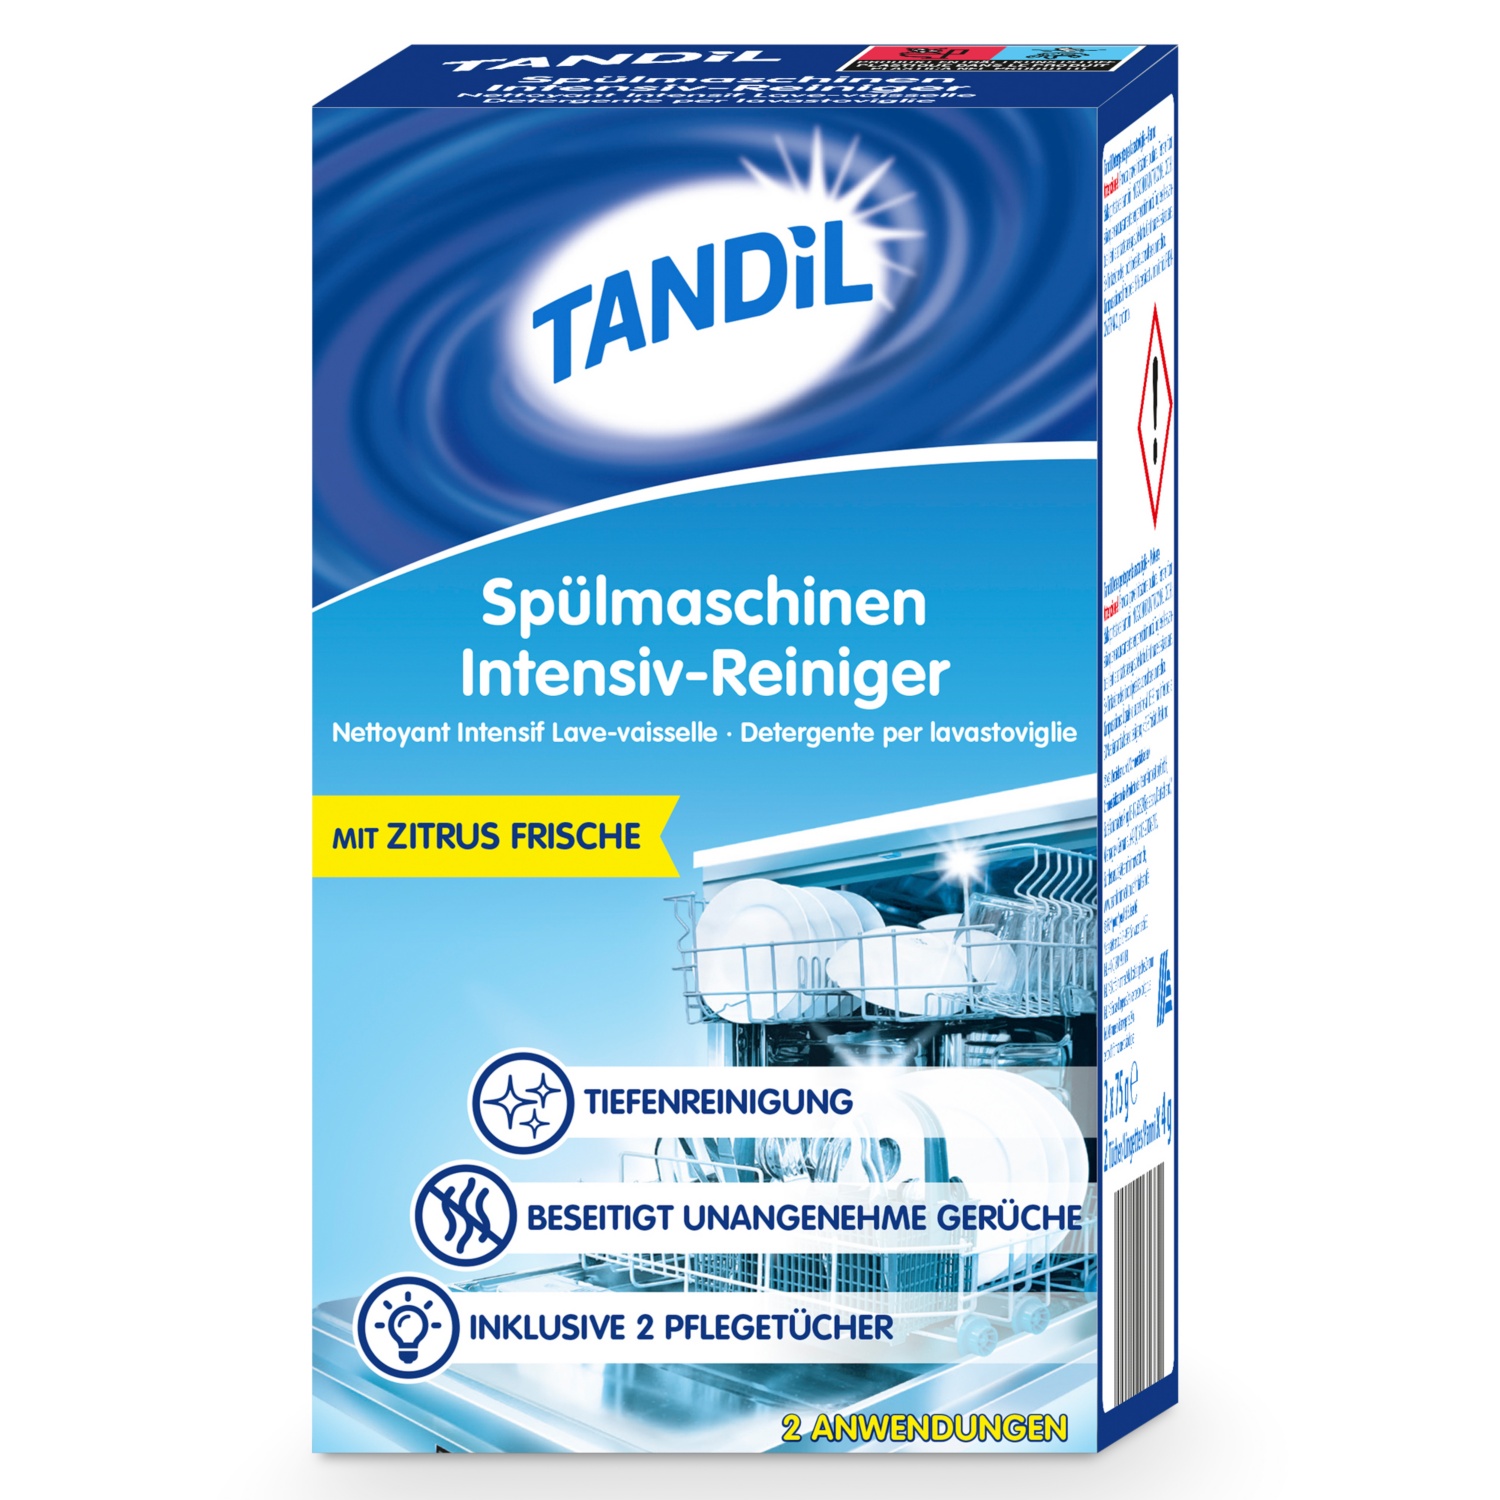 TANDIL Spülmaschinen-Intensiv-Reiniger